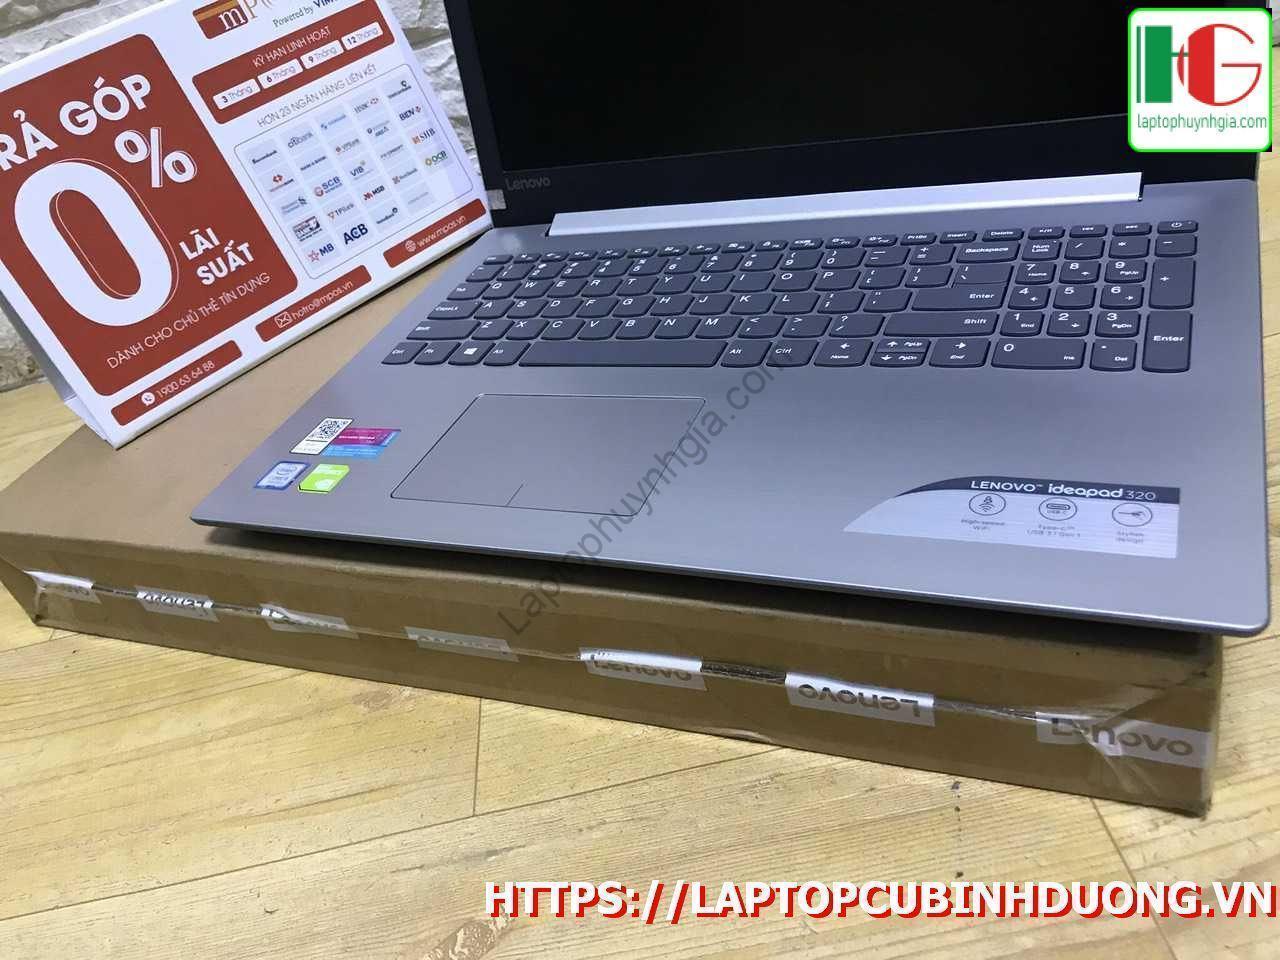 Lenovo Ideapad 320 - I5 8250u| 4G| HDD 1T| MX150| 15.6